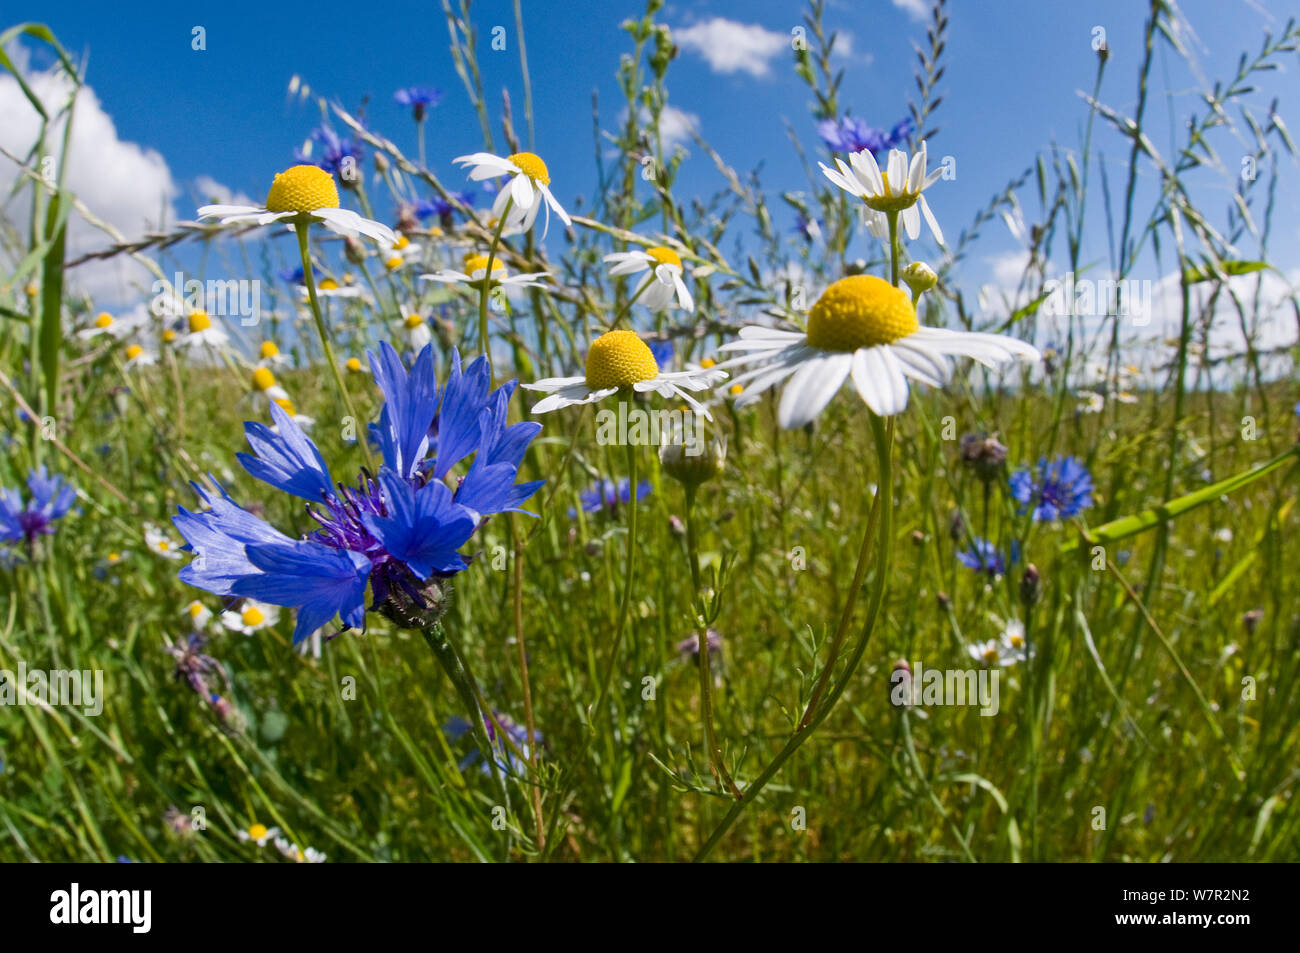 Bleuet (Centaurea cyanus) et parfumée Camomille (Matricaria recutita) croissant sur les champs en jachère près de Orvieto, Ombrie, Italie, mai. Prises avec objectif fisheye Banque D'Images